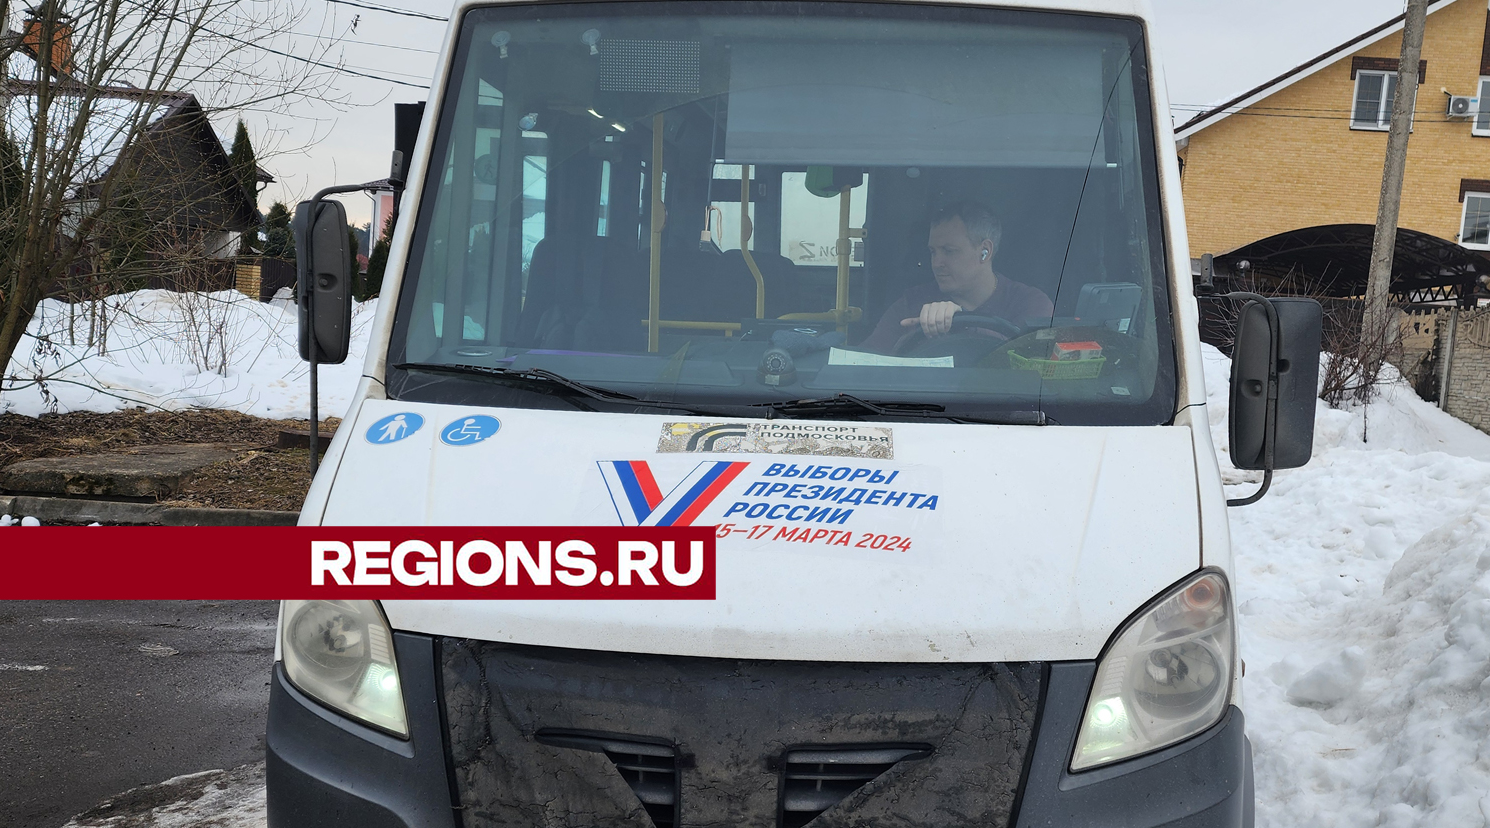 Члены УИКов в Пушкинском округе объехали жителей отдаленных деревень и дали им возможность проголосовать